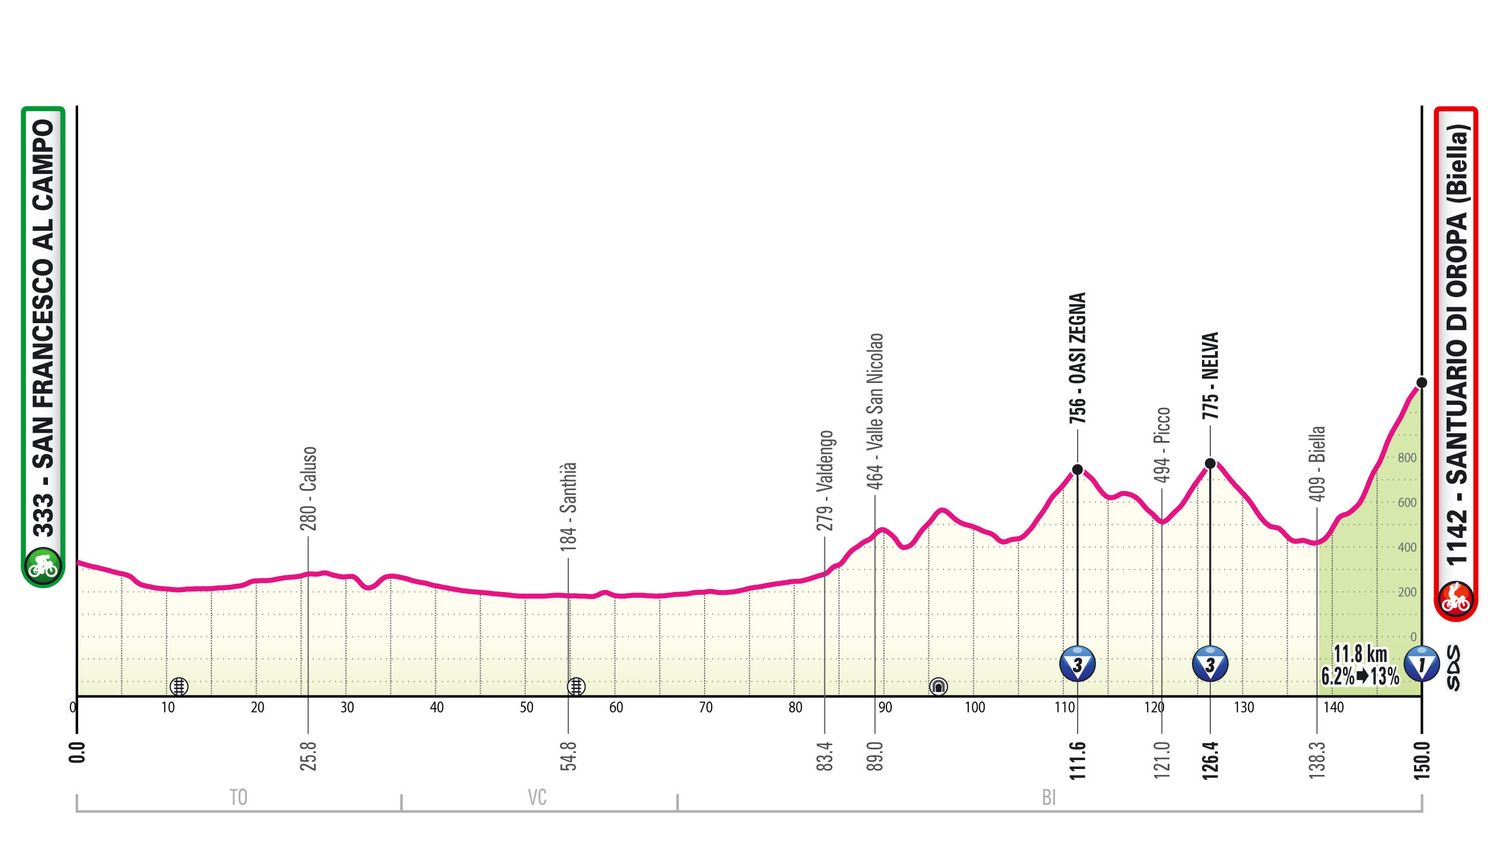 Etappe 2 Giro d'Italia